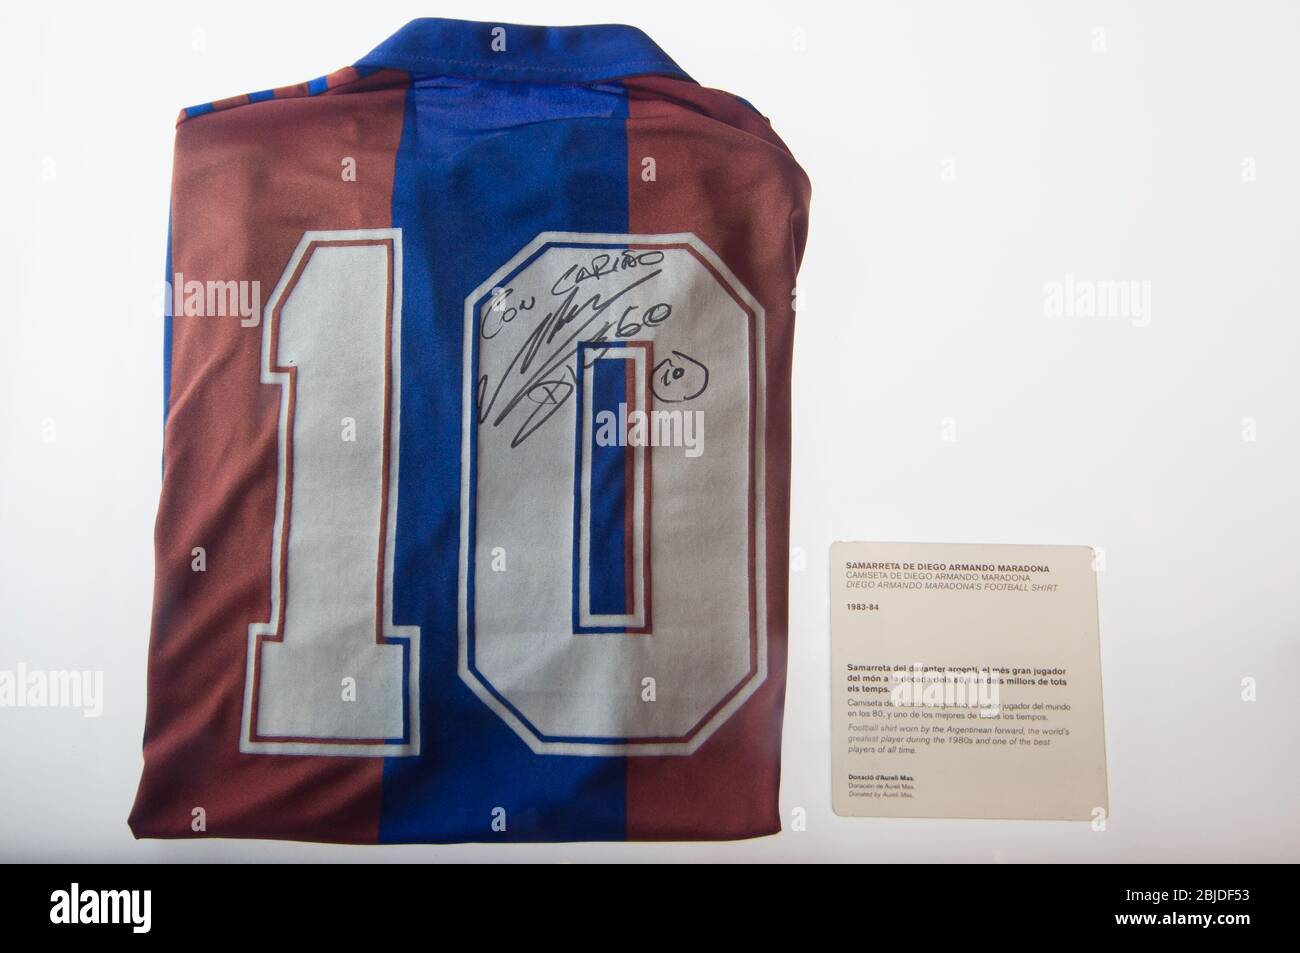 Barcelone, Espagne - 22 septembre 2014 : Diego Armando Maradona maillot de football au musée du FC Barcelone. Camp Nou, Barcelone, Espagne. Banque D'Images